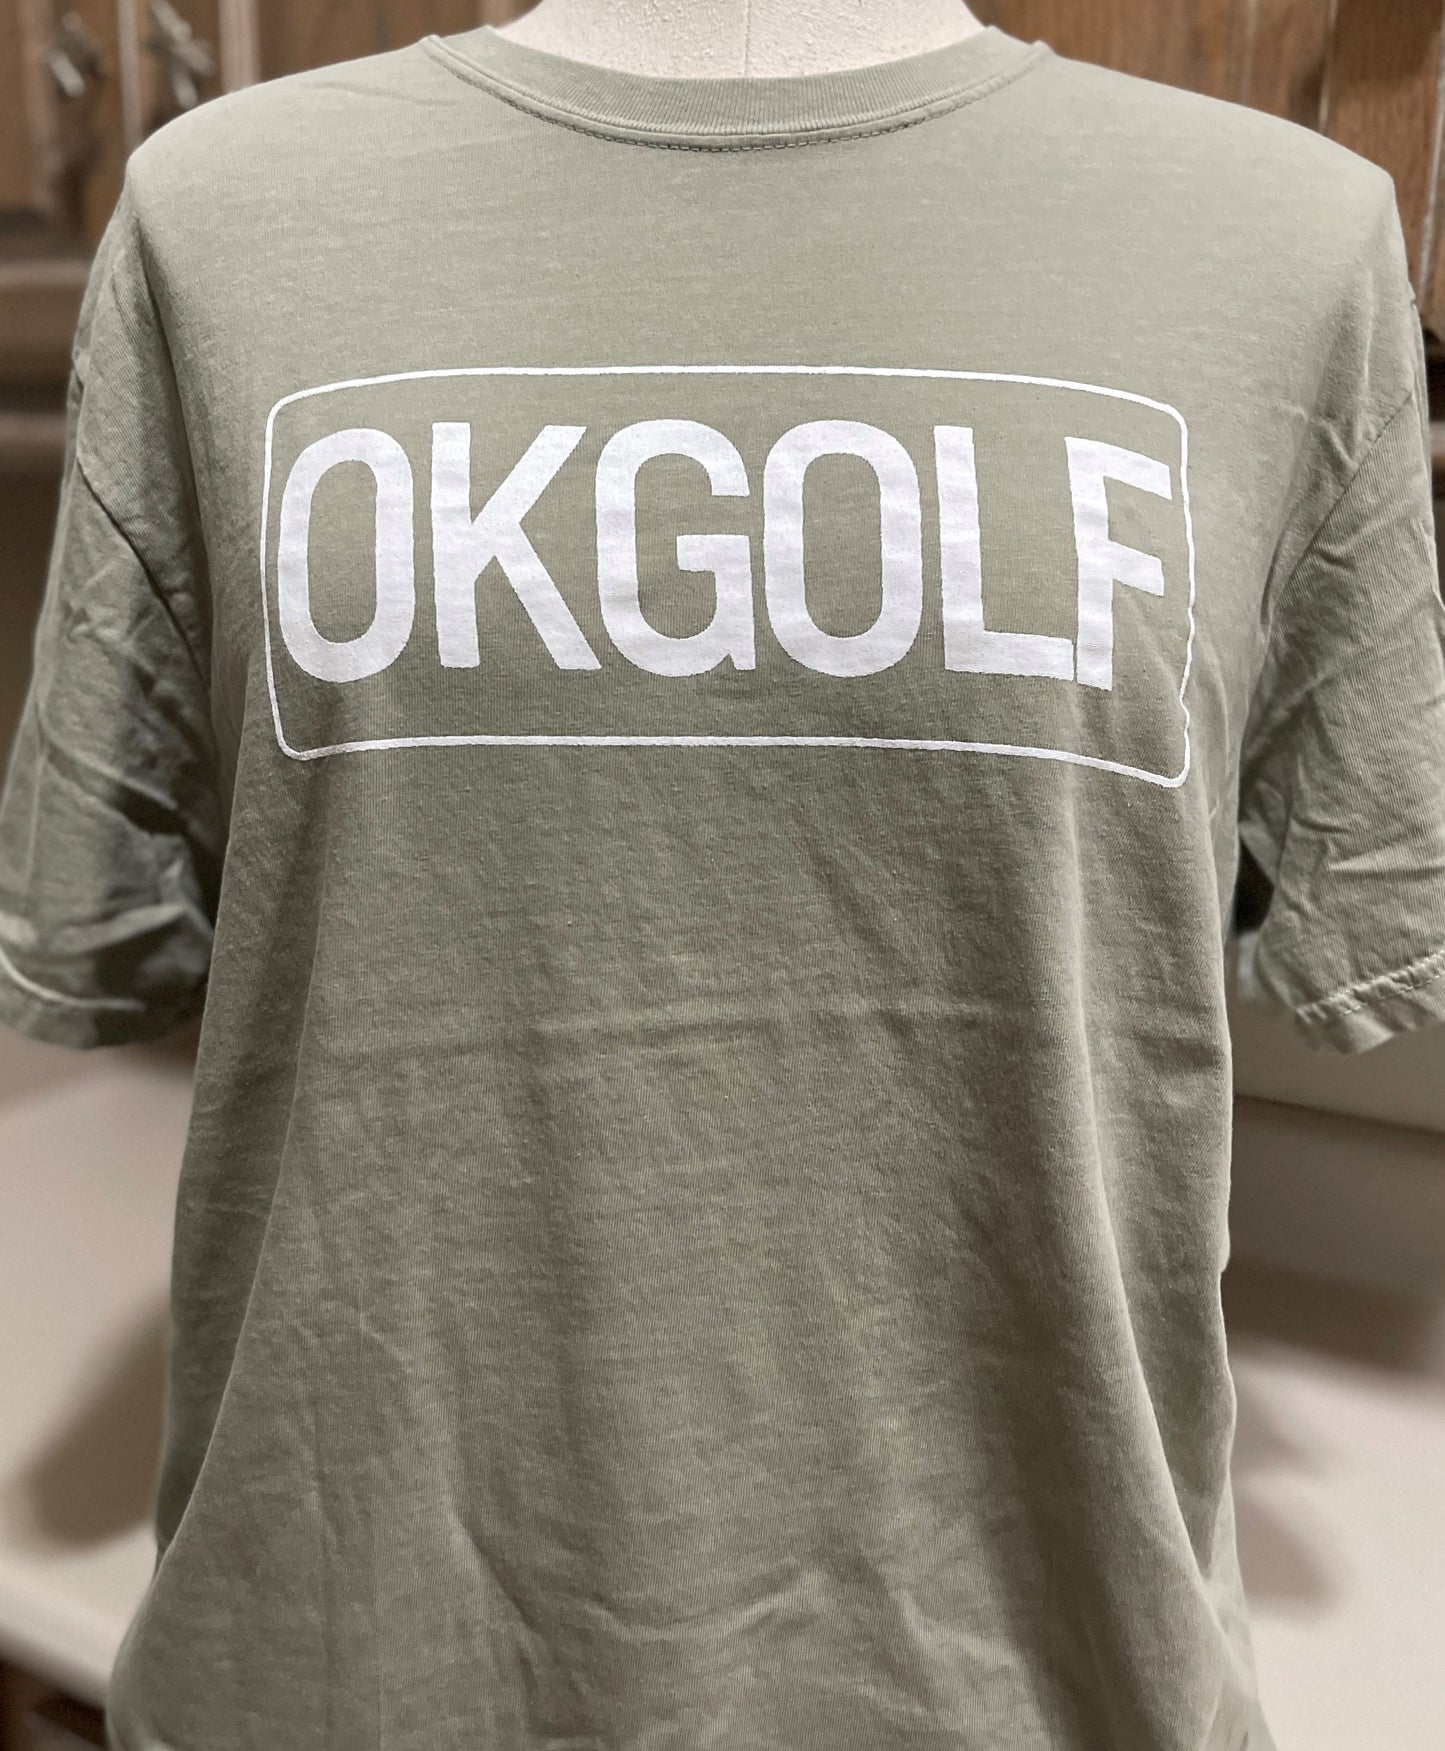 OKGOLF T-Shirt